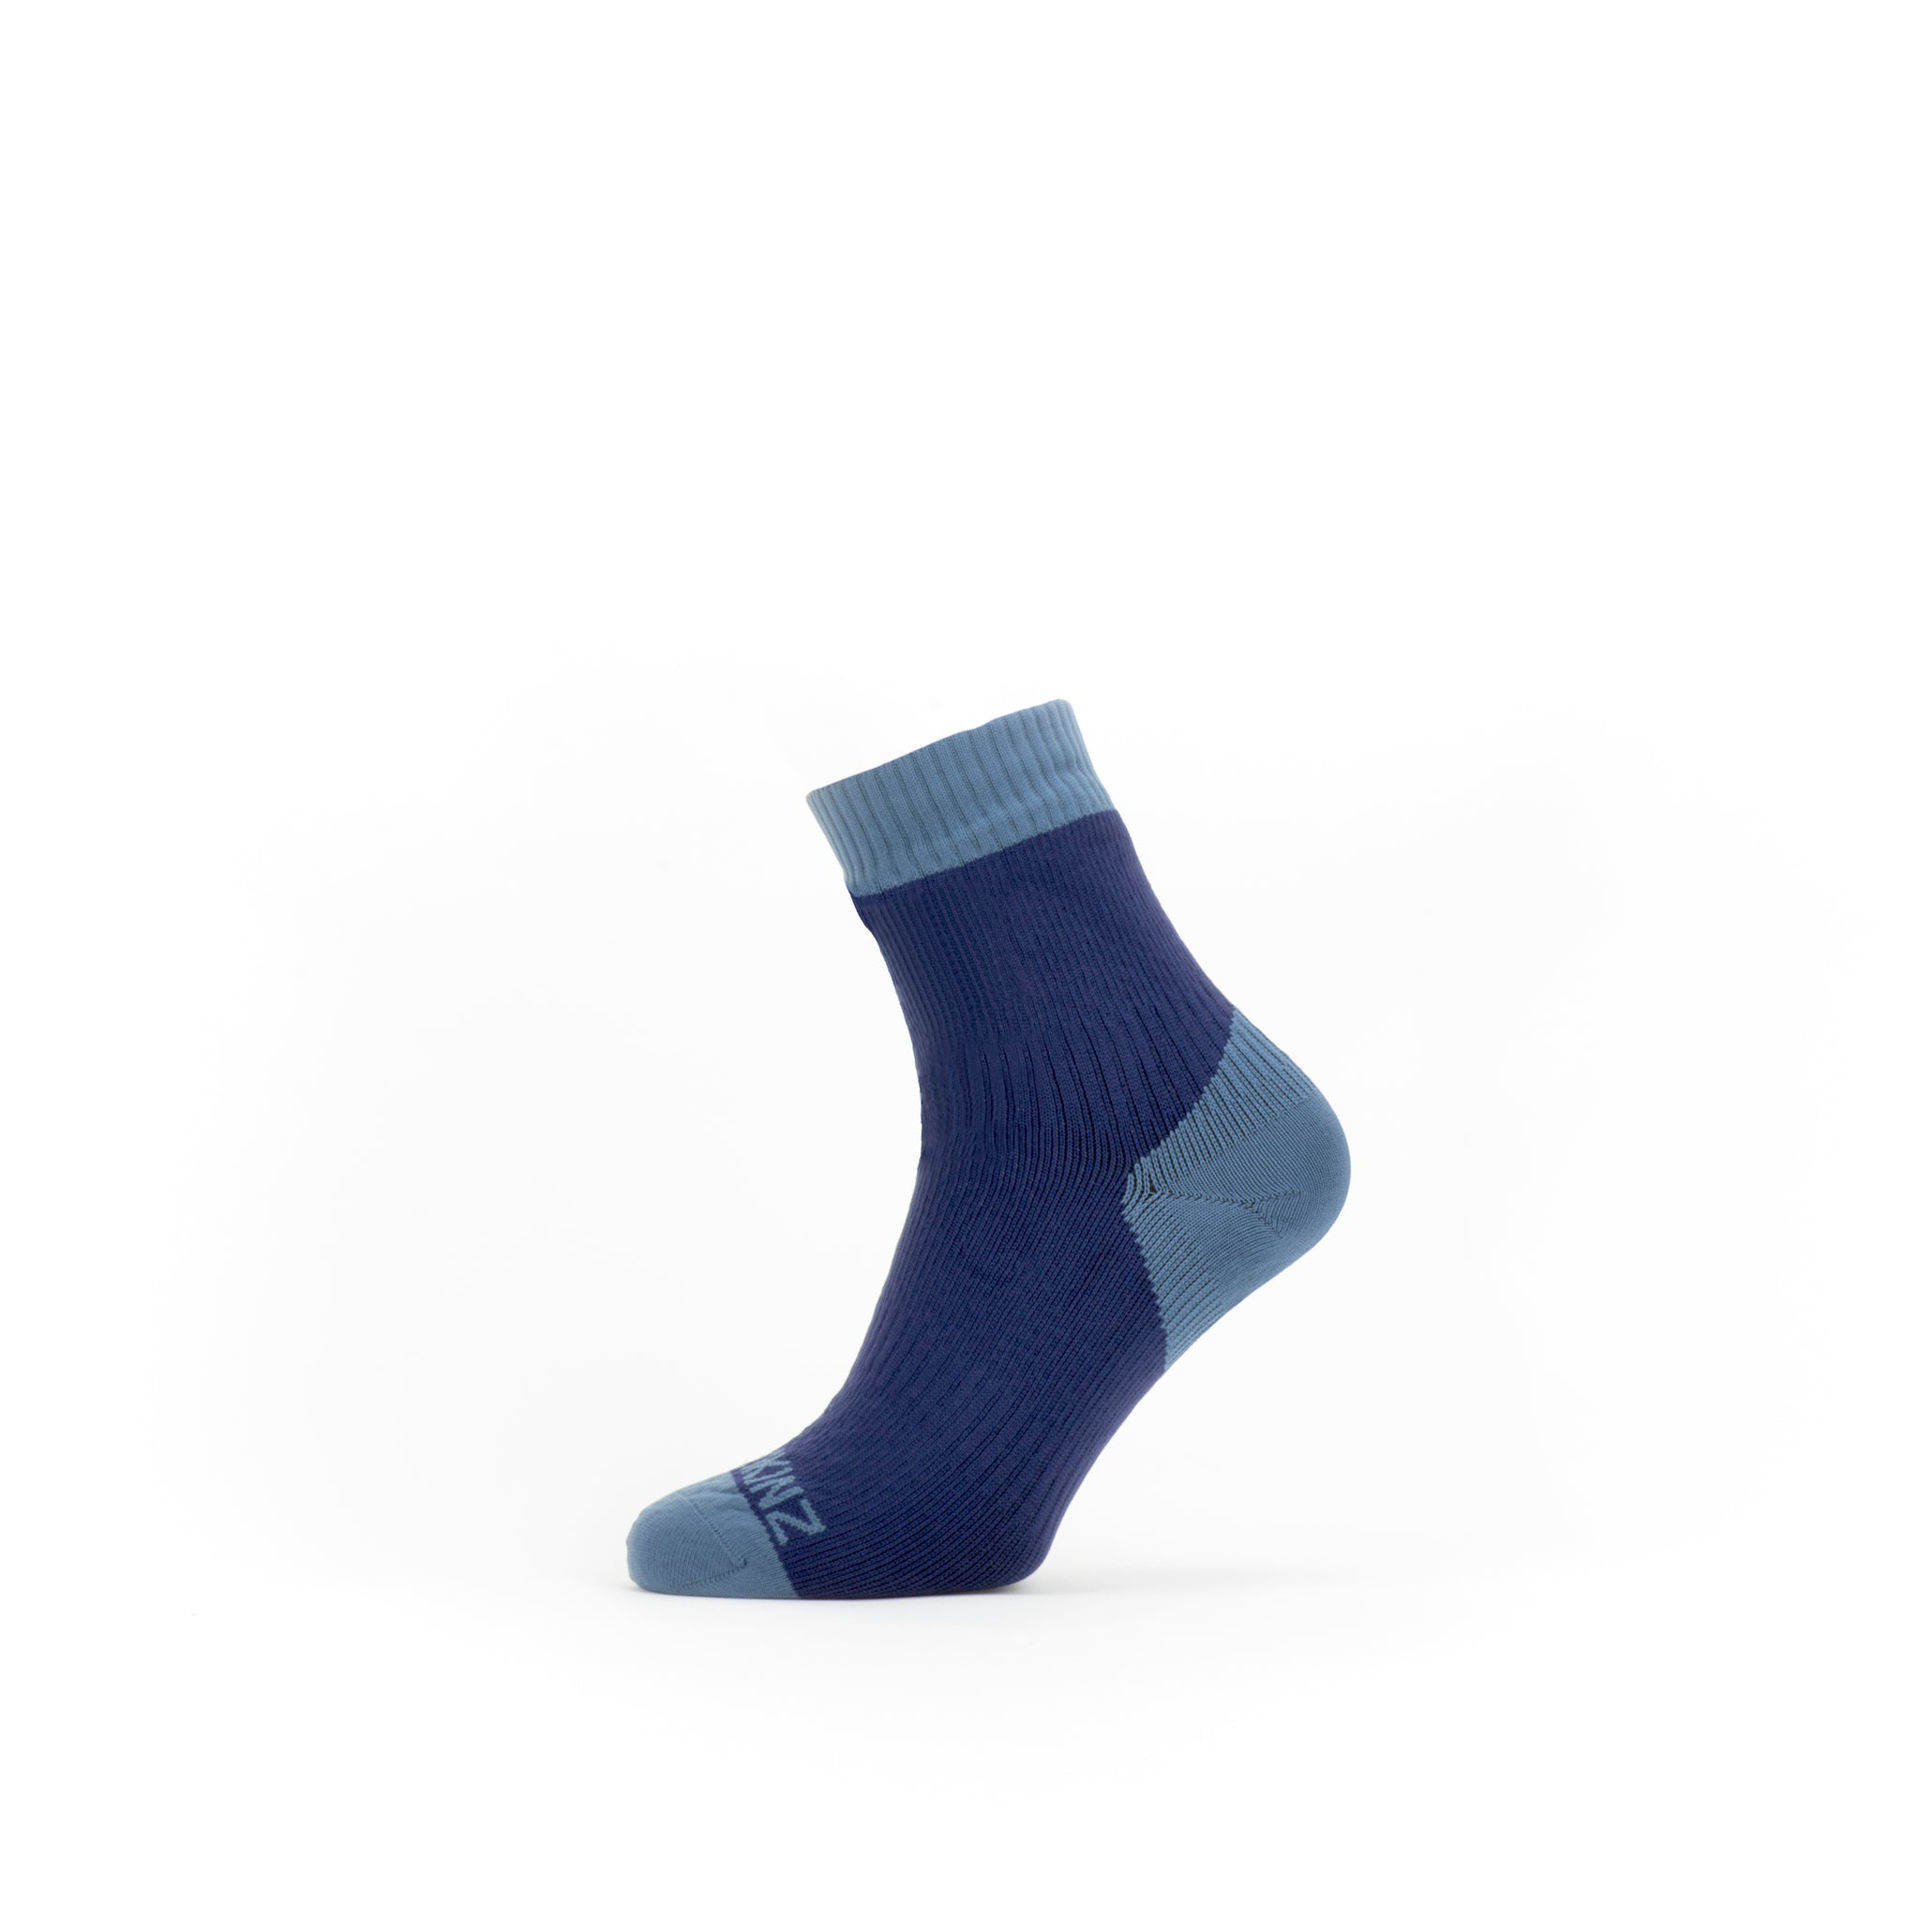 Sealskinz Waterproof Warm Weather Ankle Sock in Navy Blue